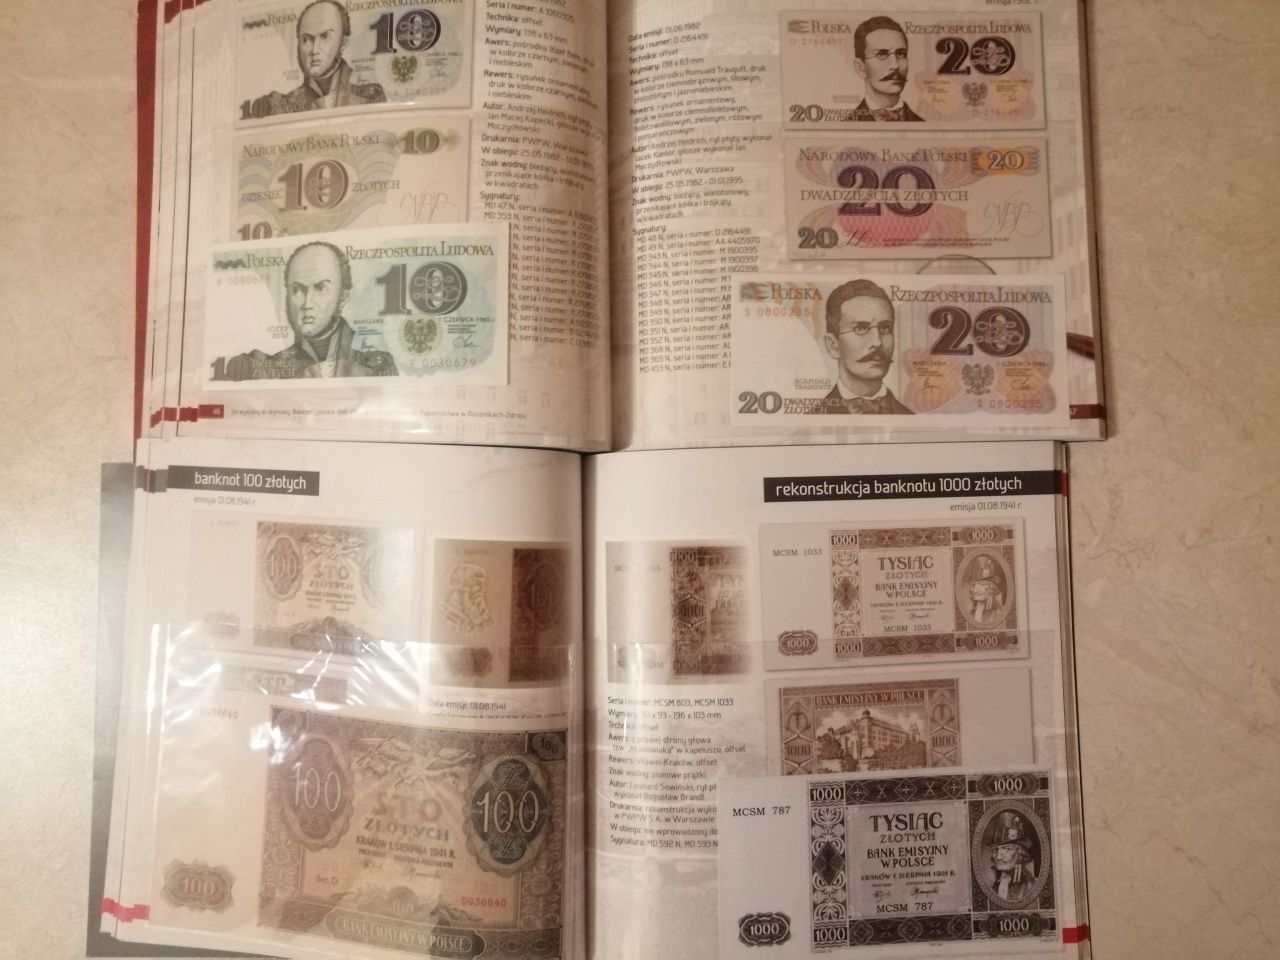 Albumy banknoty polskie od 1939r do 1994r wraz z kopiami banknotów